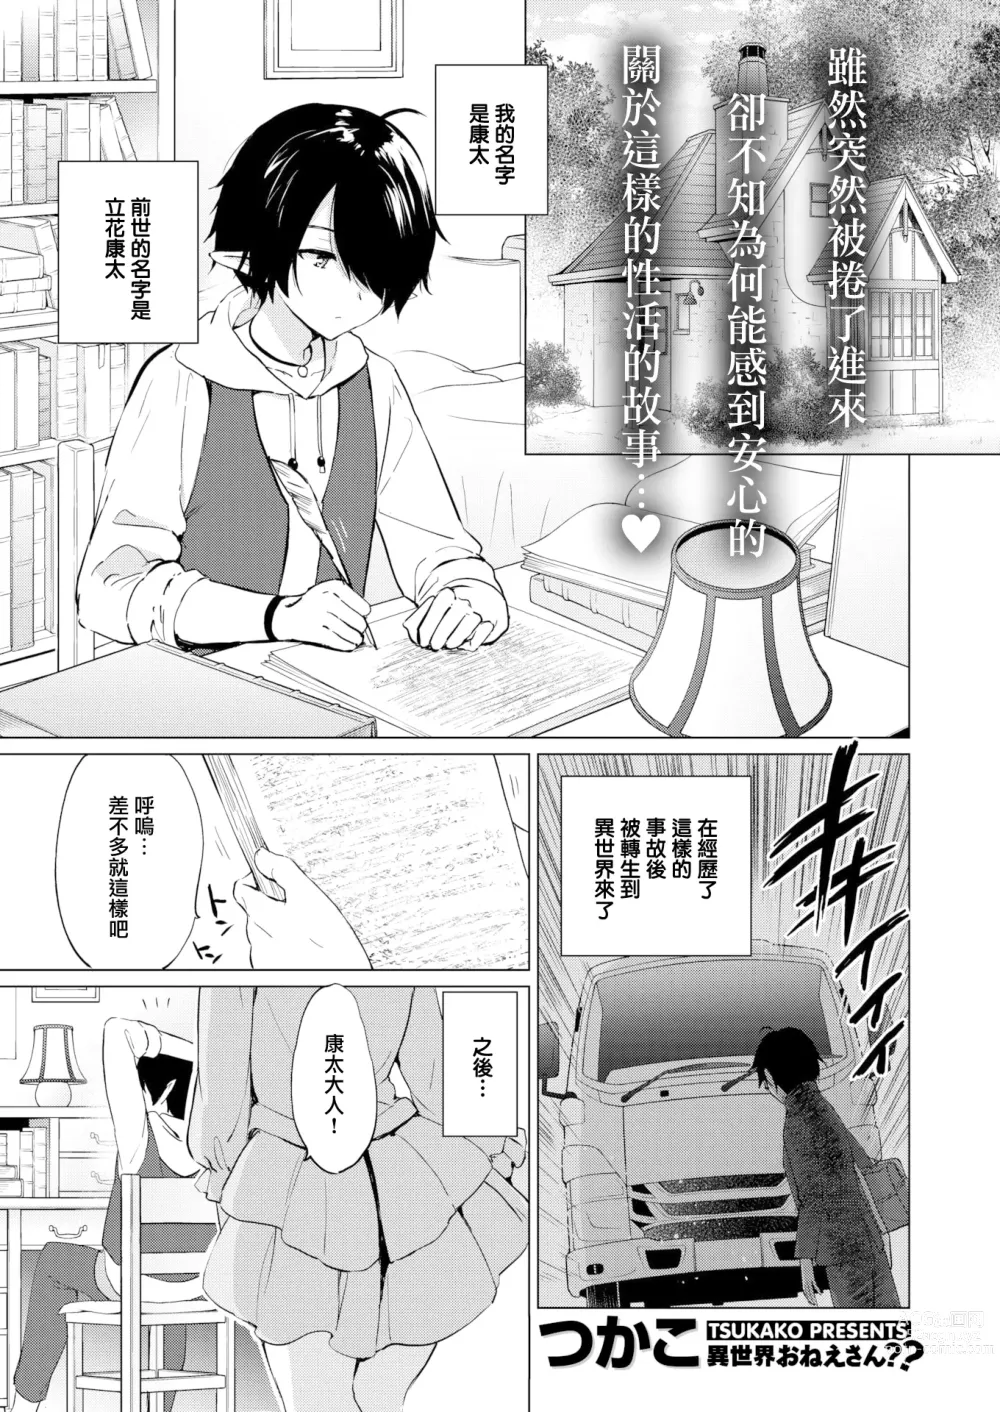 Page 5 of doujinshi 蜜月パラダイス